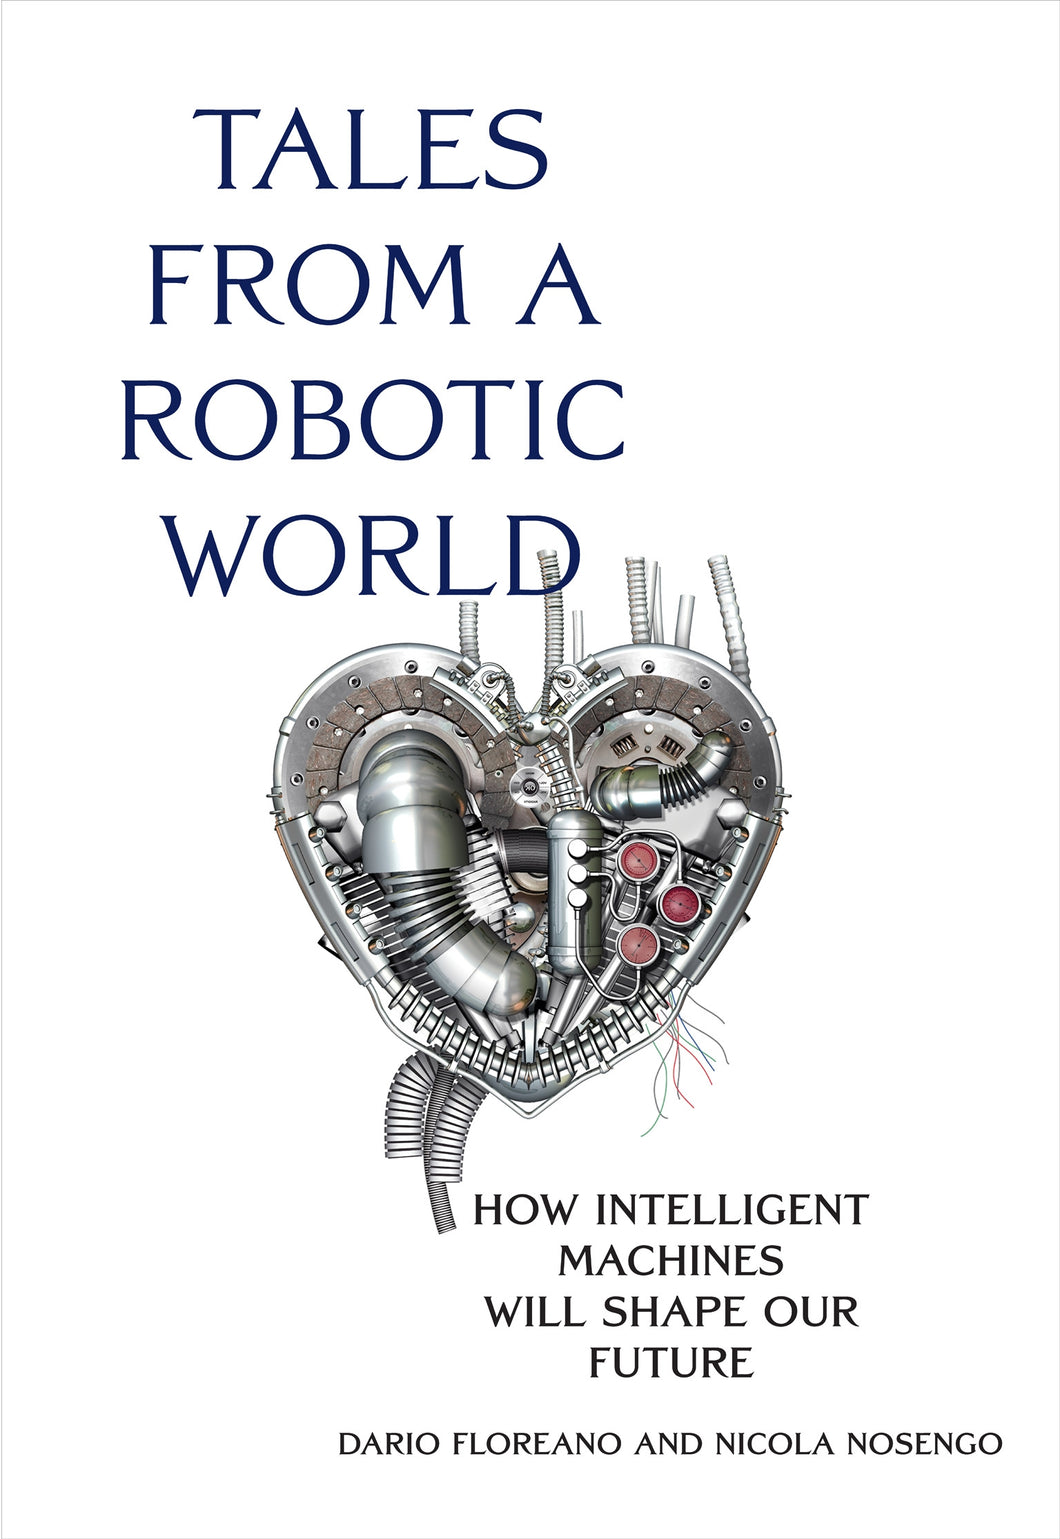 Tales from a Robotic World : How Intelligent Machines Will Shape Our Future ร้านหนังสือและสิ่งของ เป็นร้านหนังสือภาษาอังกฤษหายาก และร้านกาแฟ หรือ บุ๊คคาเฟ่ ตั้งอยู่สุขุมวิท กรุงเทพ